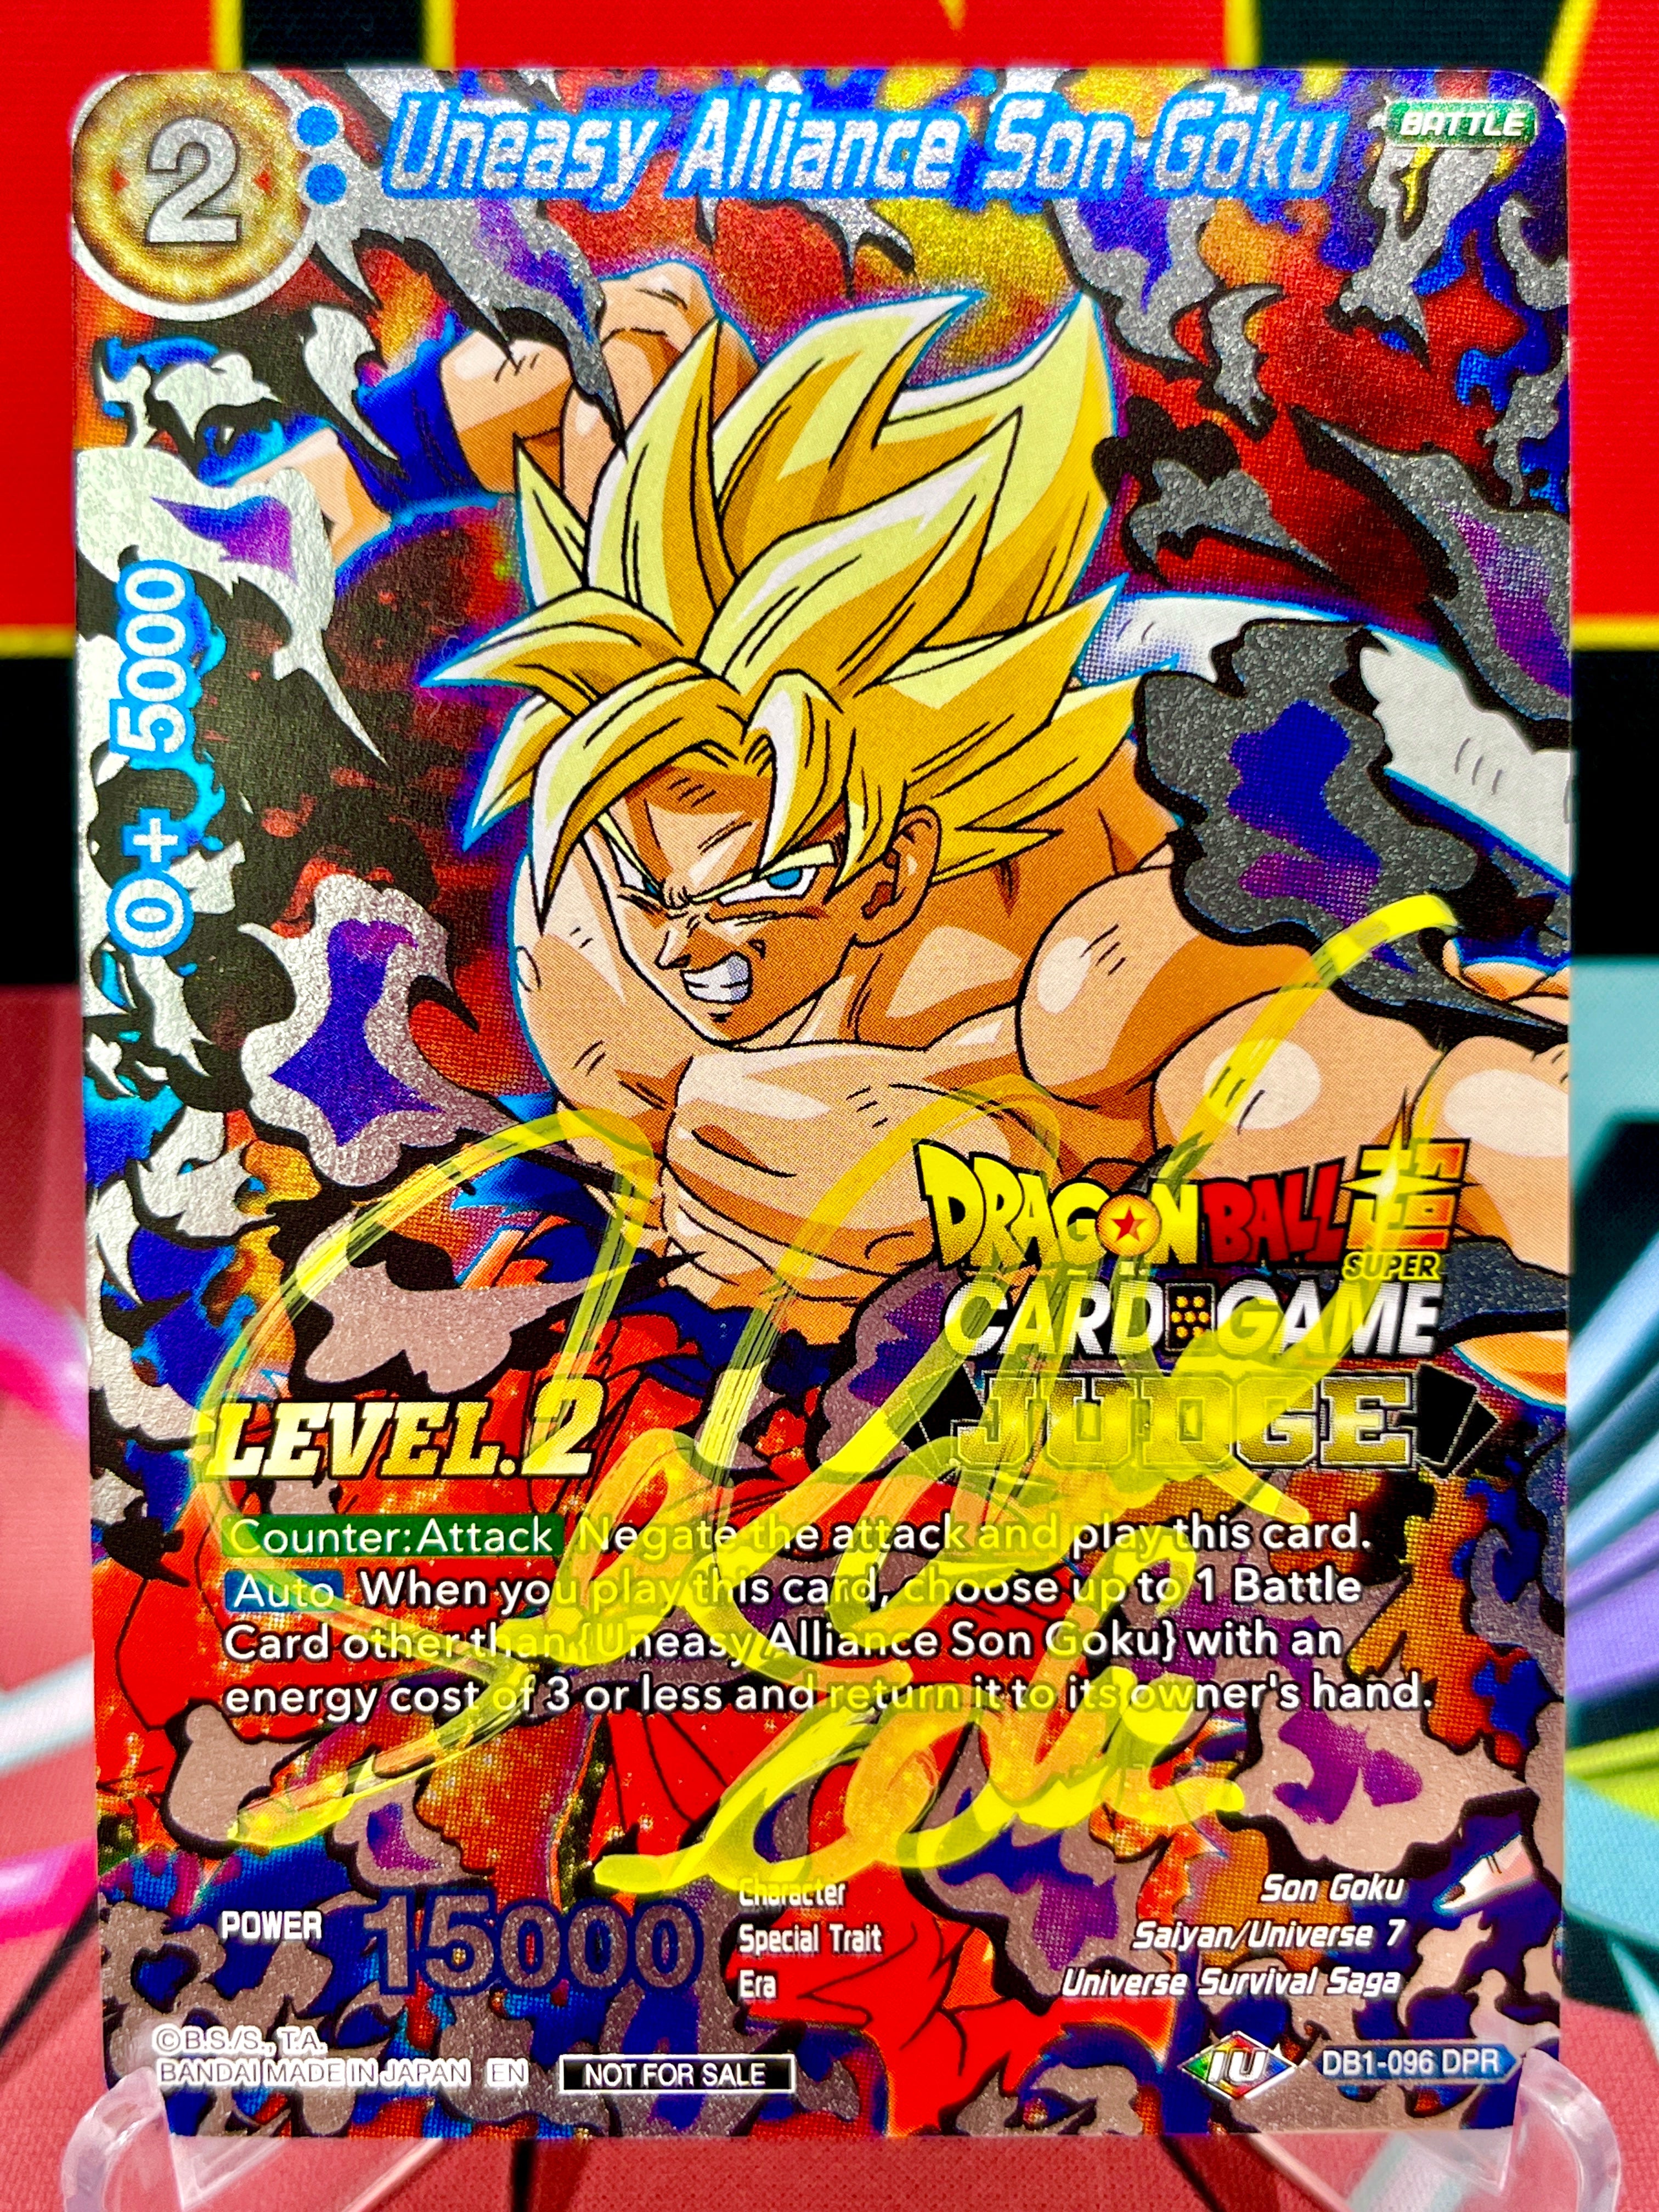 DB1-096 Uneasy Alliance Son Goku DPR JUDGE Lvl. 2 (2019) Autographed by Sean Schemmel